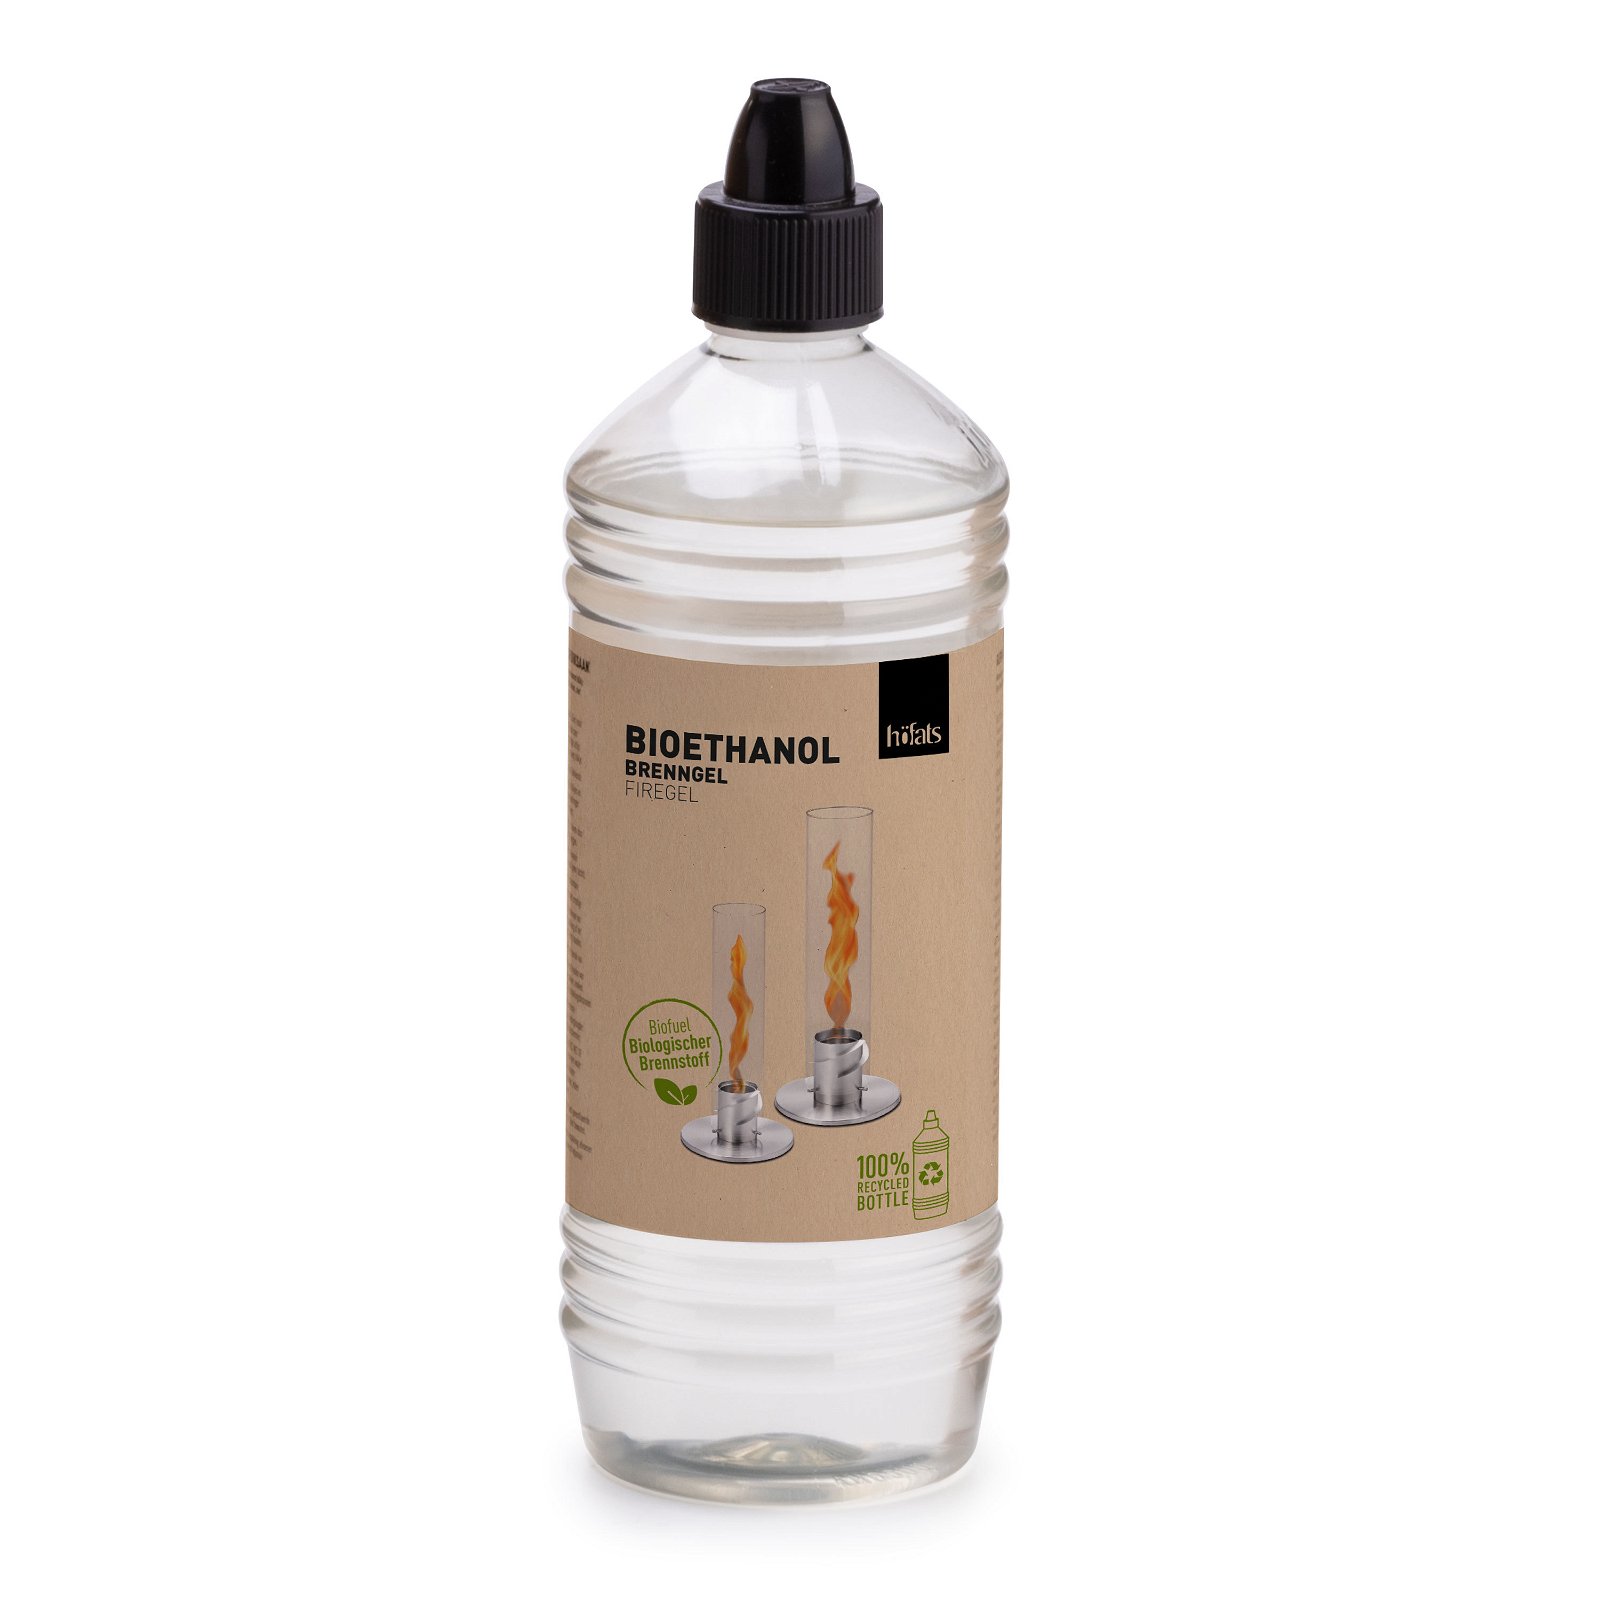 SPIN Bioethanol Nachfüllflasche, Höfats, 1000 ml